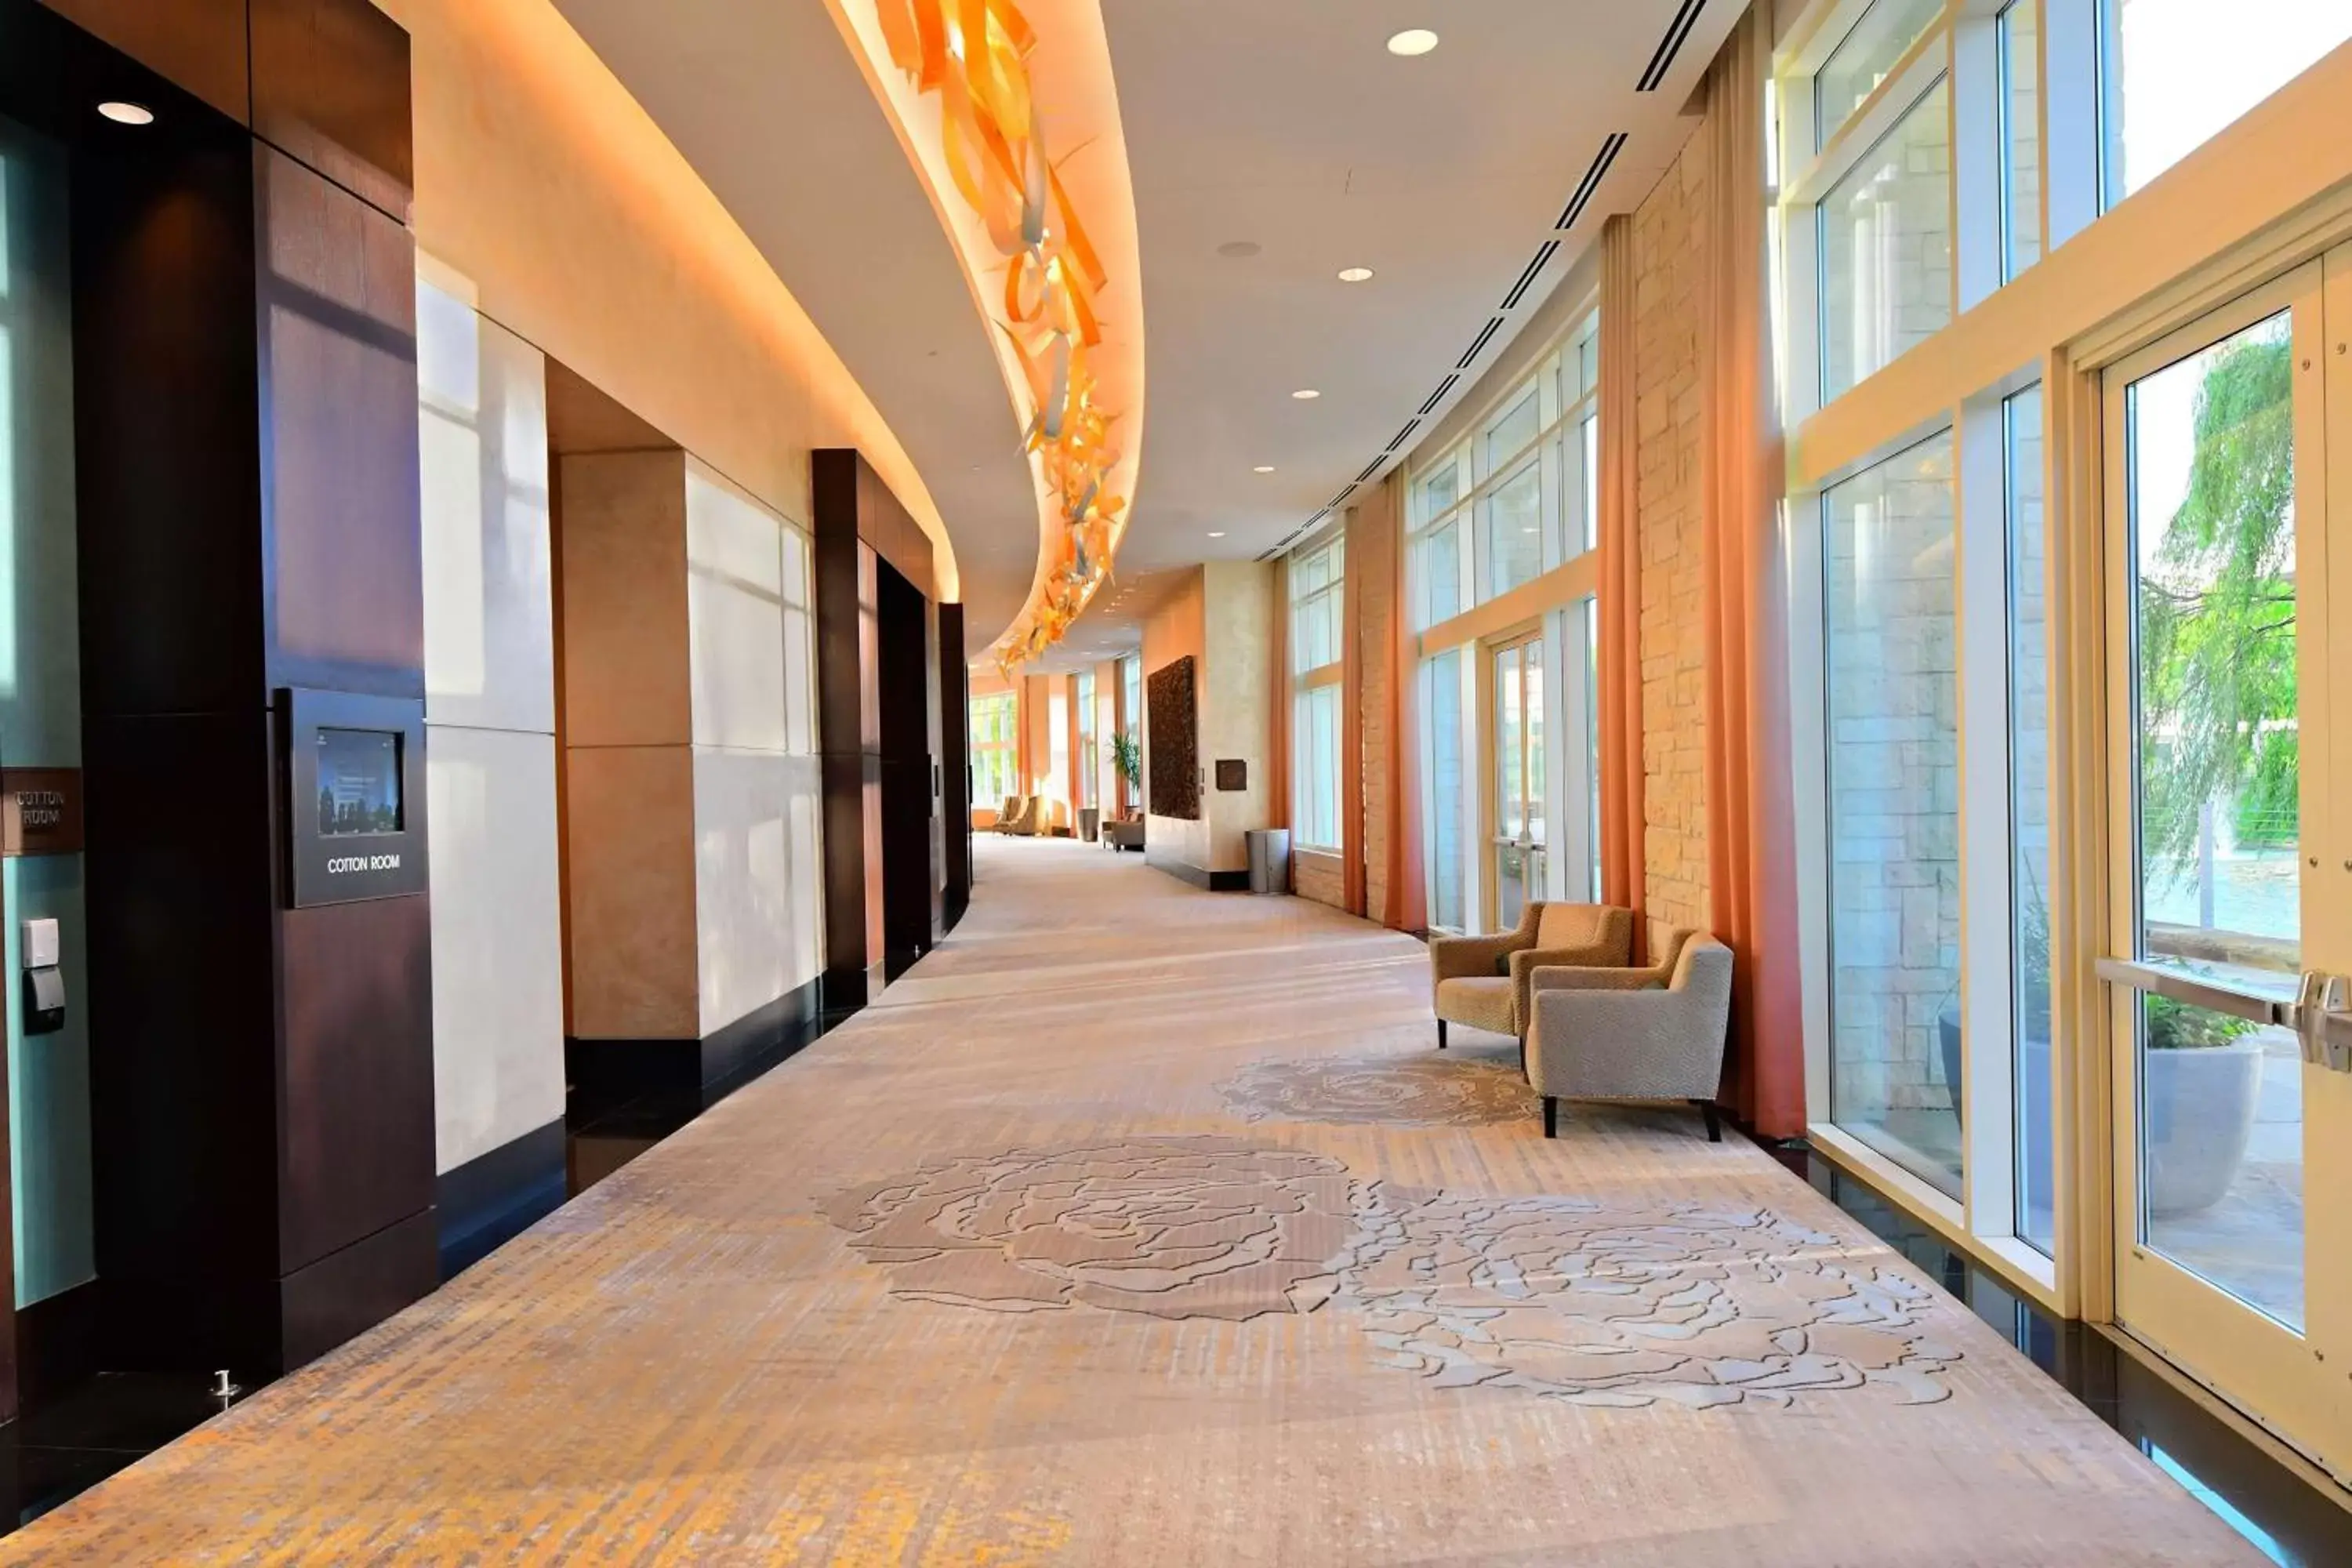 Meeting/conference room in Hilton Dallas/Plano Granite Park